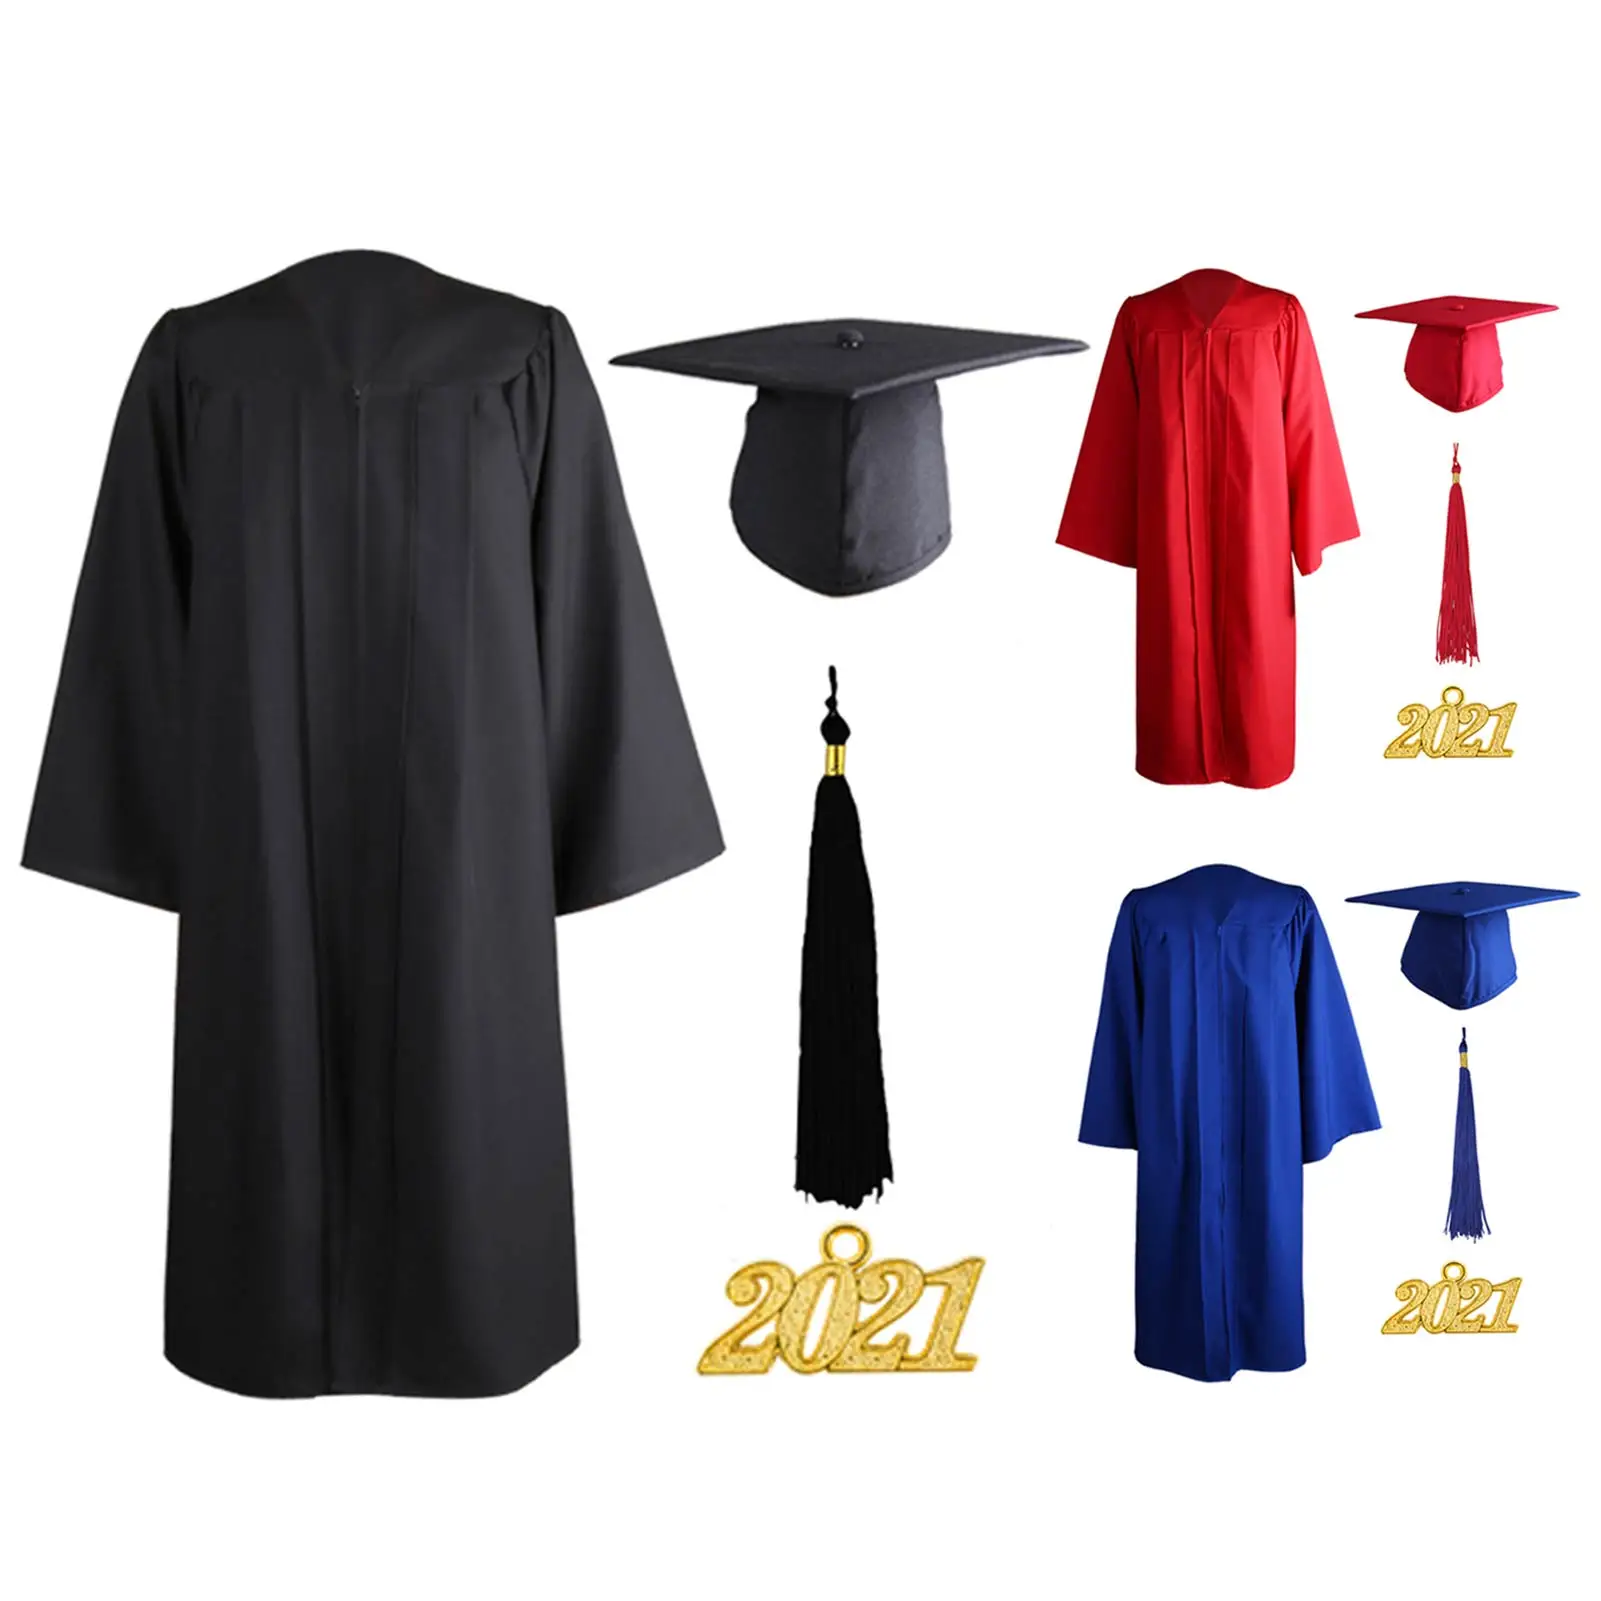 

Унисекс, платье для выпускного, хора, халаты, шапочка, комплект одежды 2021 для старшей школы и бакалавра, Студенческая Униформа с коллажем